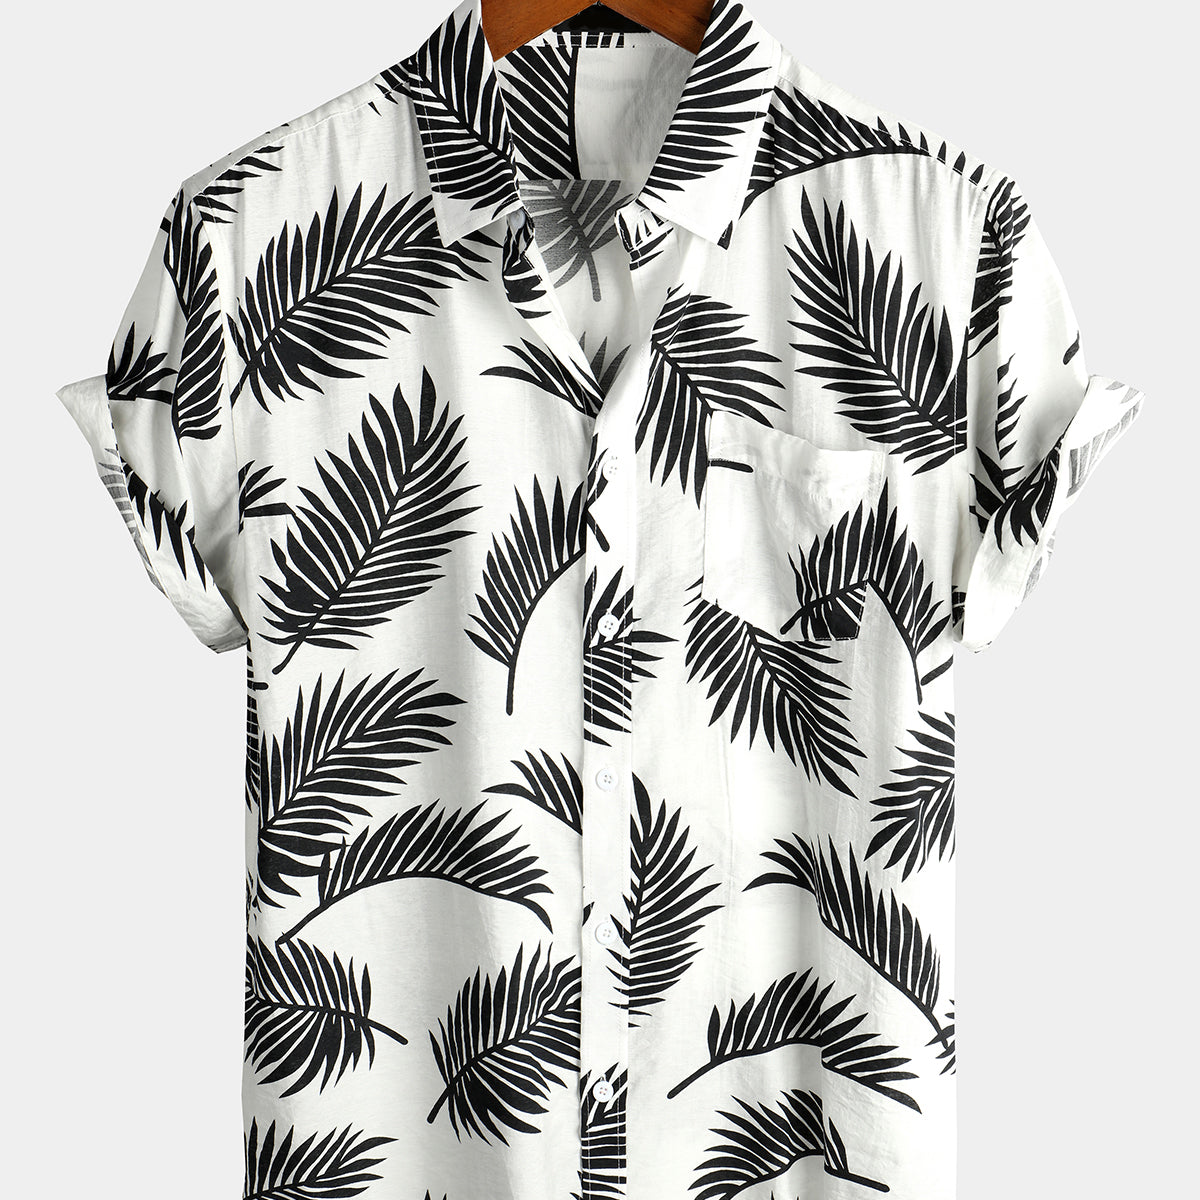 Men's Blue Tropical Leaf Print Pocket Short Sleeve Shirt